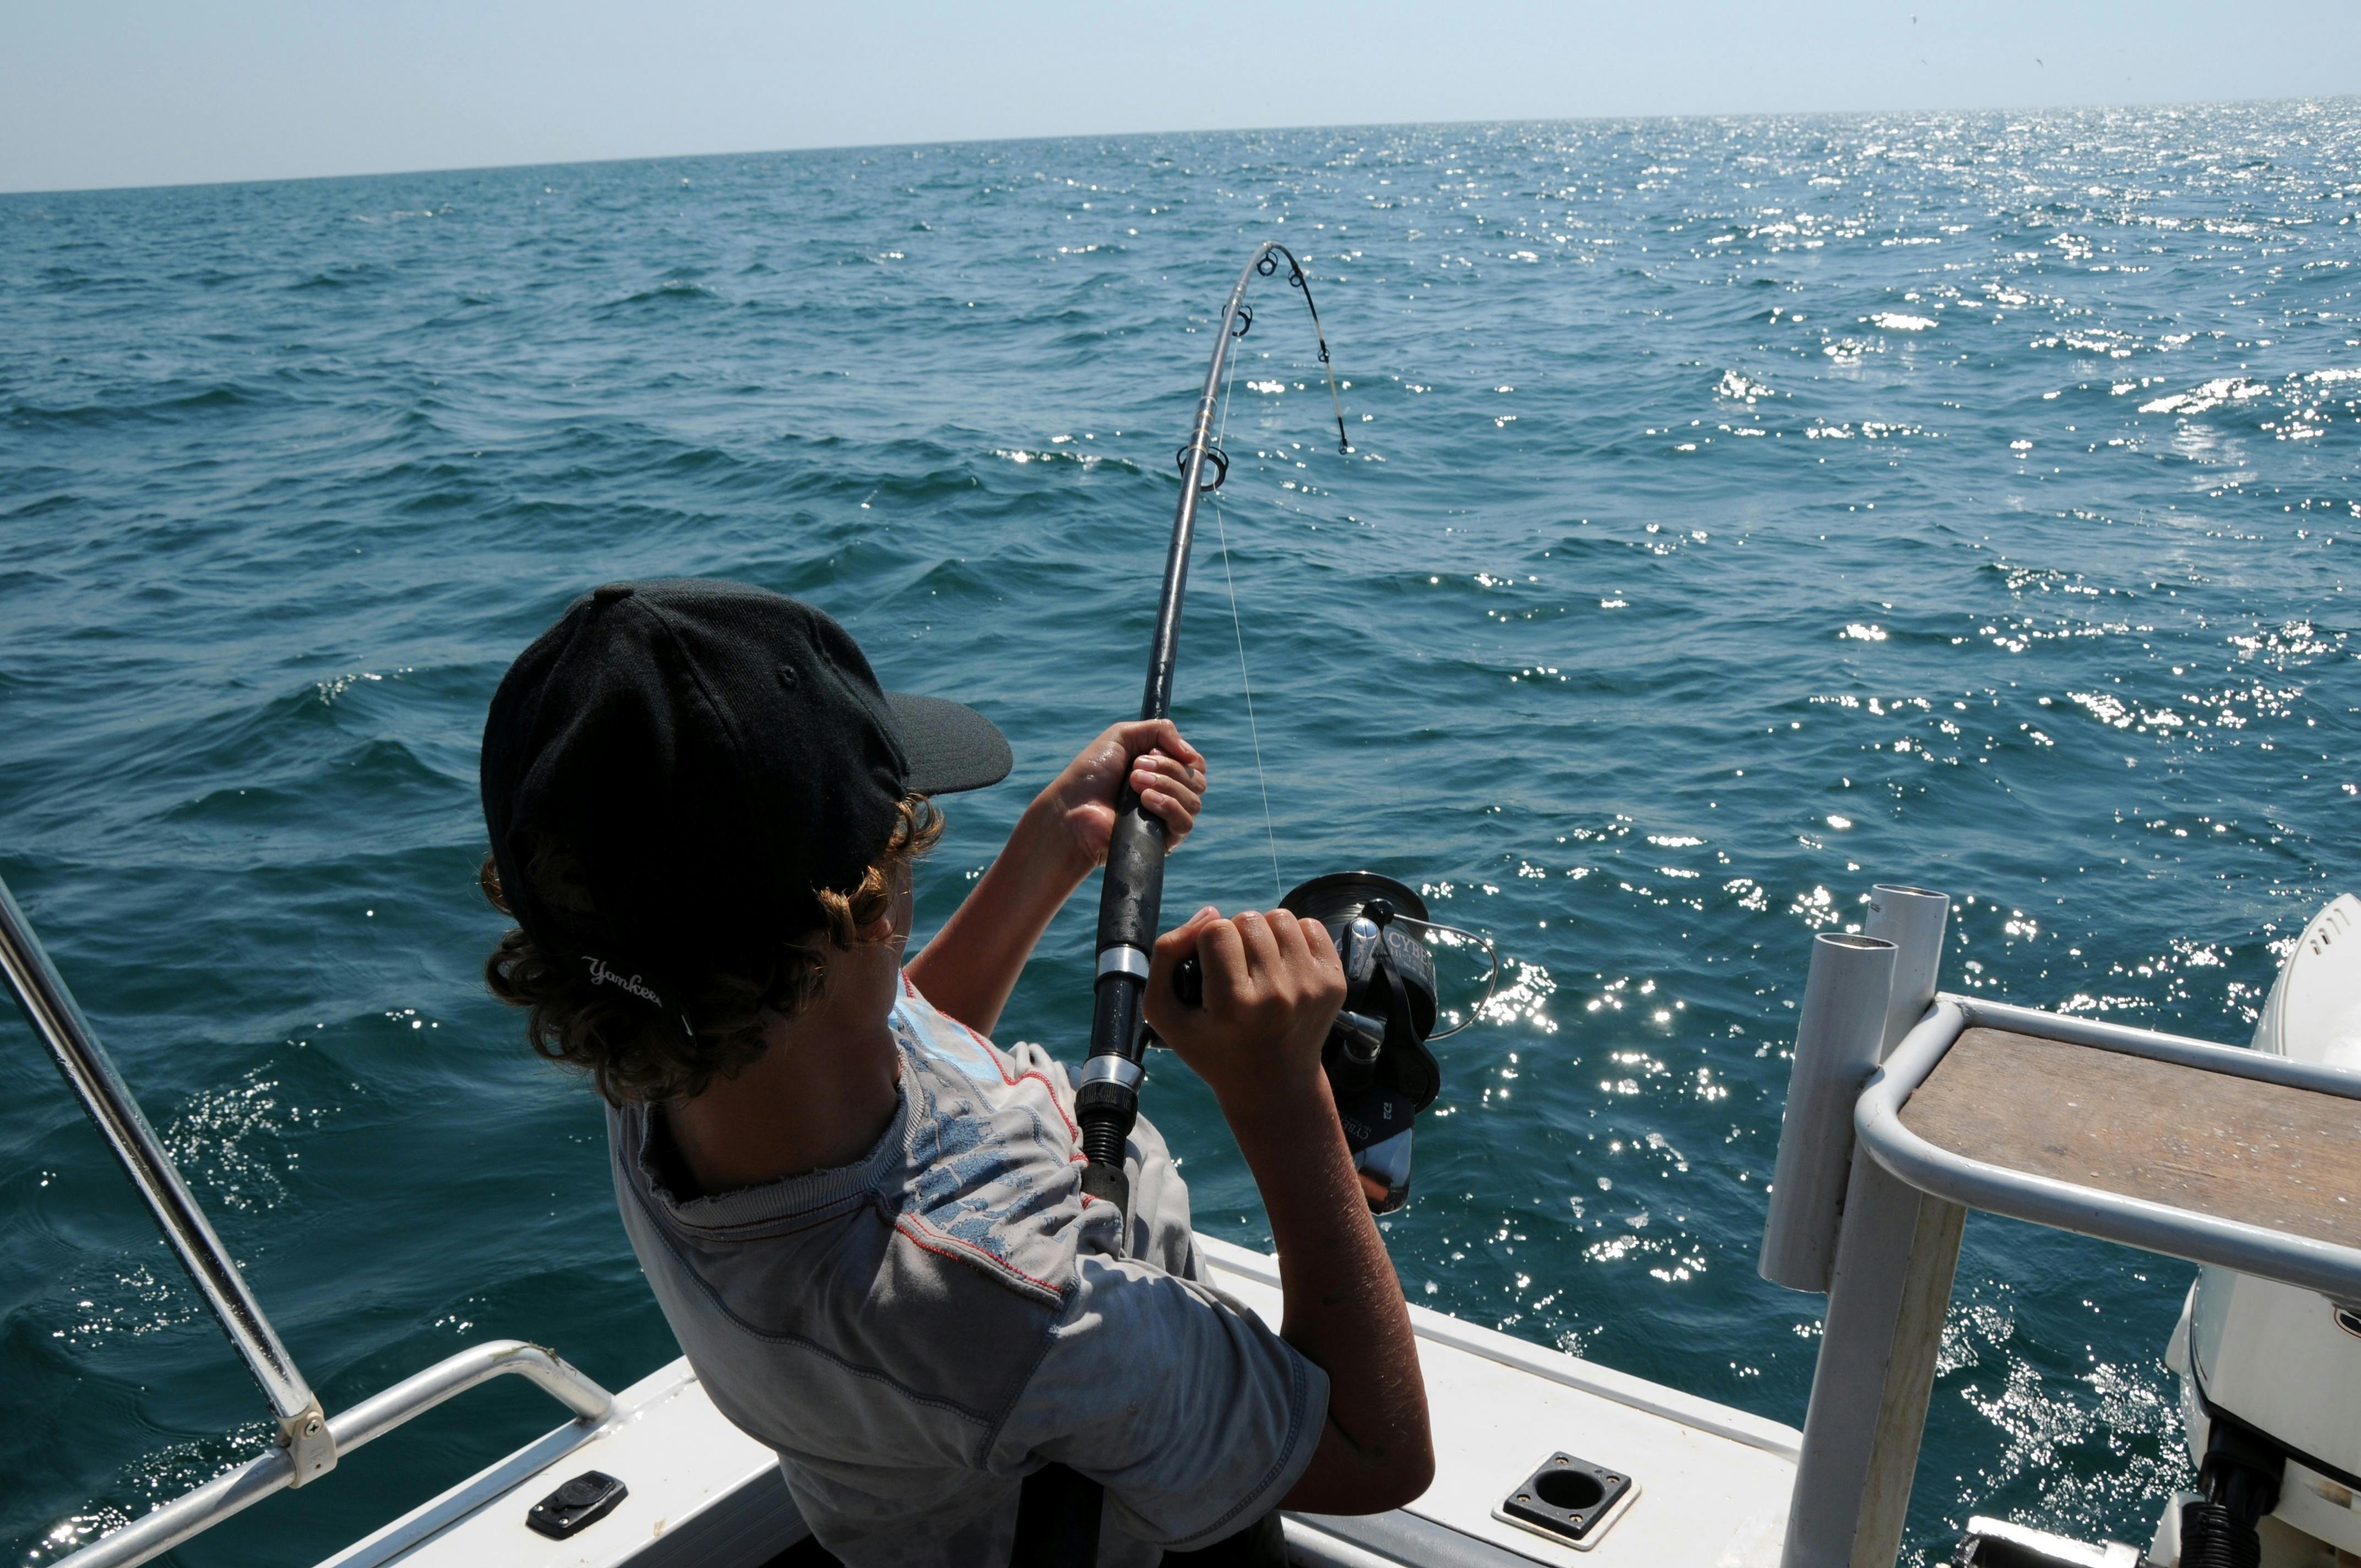 Mann beim Fischen vom Boot aus auf dem Meer. | Quelle: Pexels